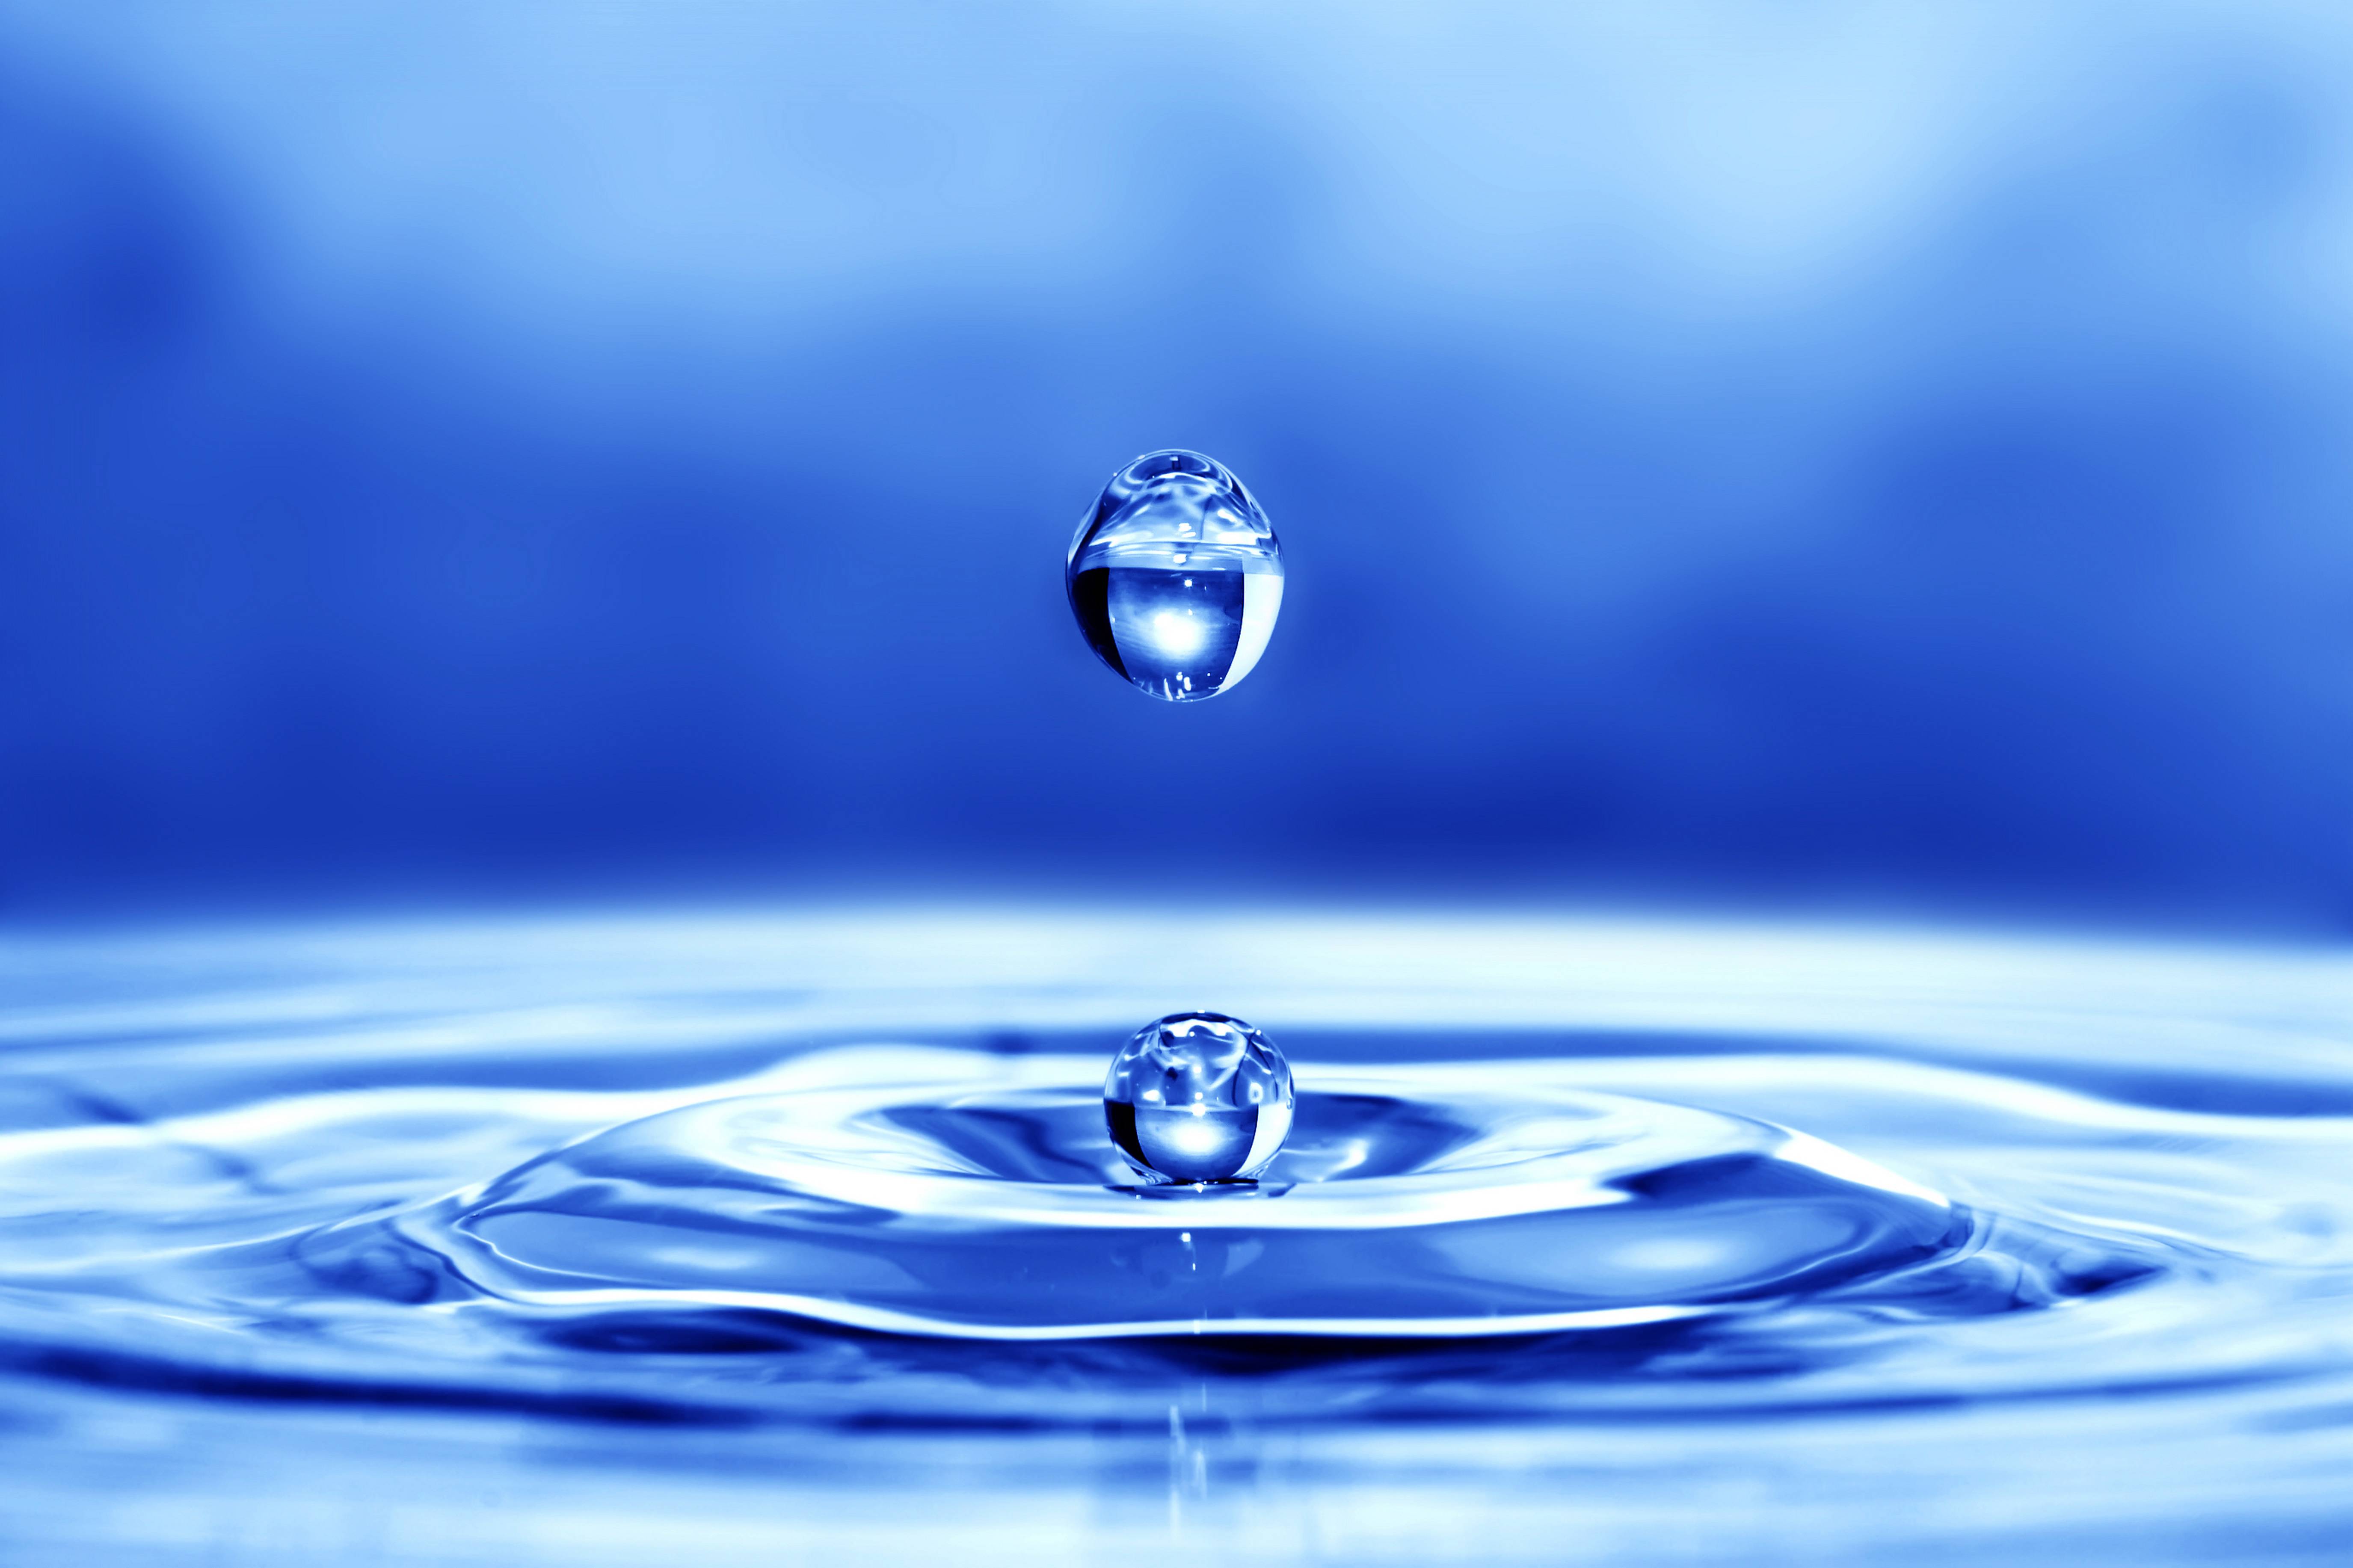 Download texture: drop water background, texture, water, water